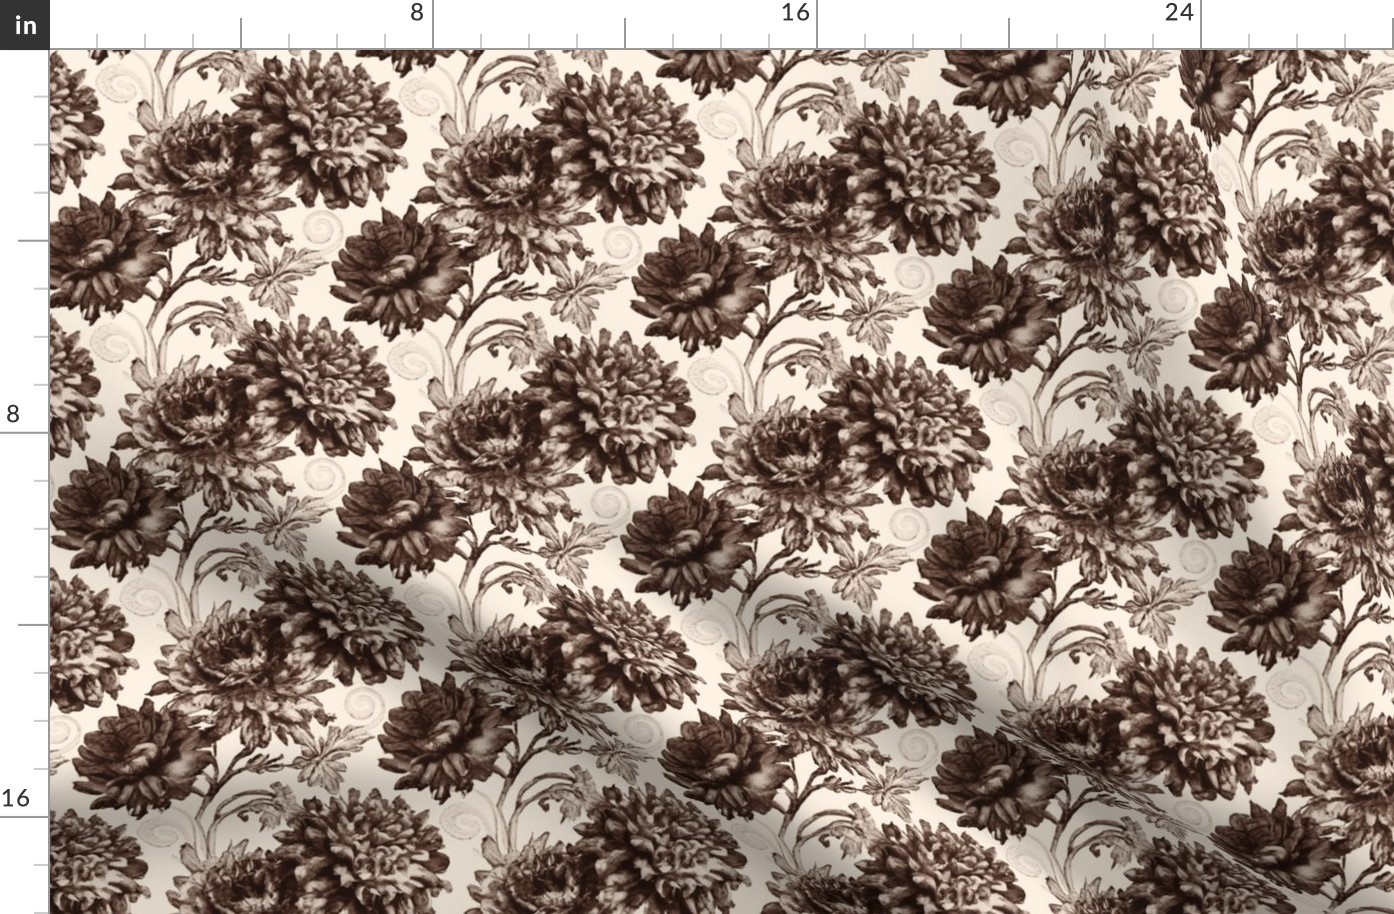 Antique Chrysanthemum Toile in Sepia - Coordinate